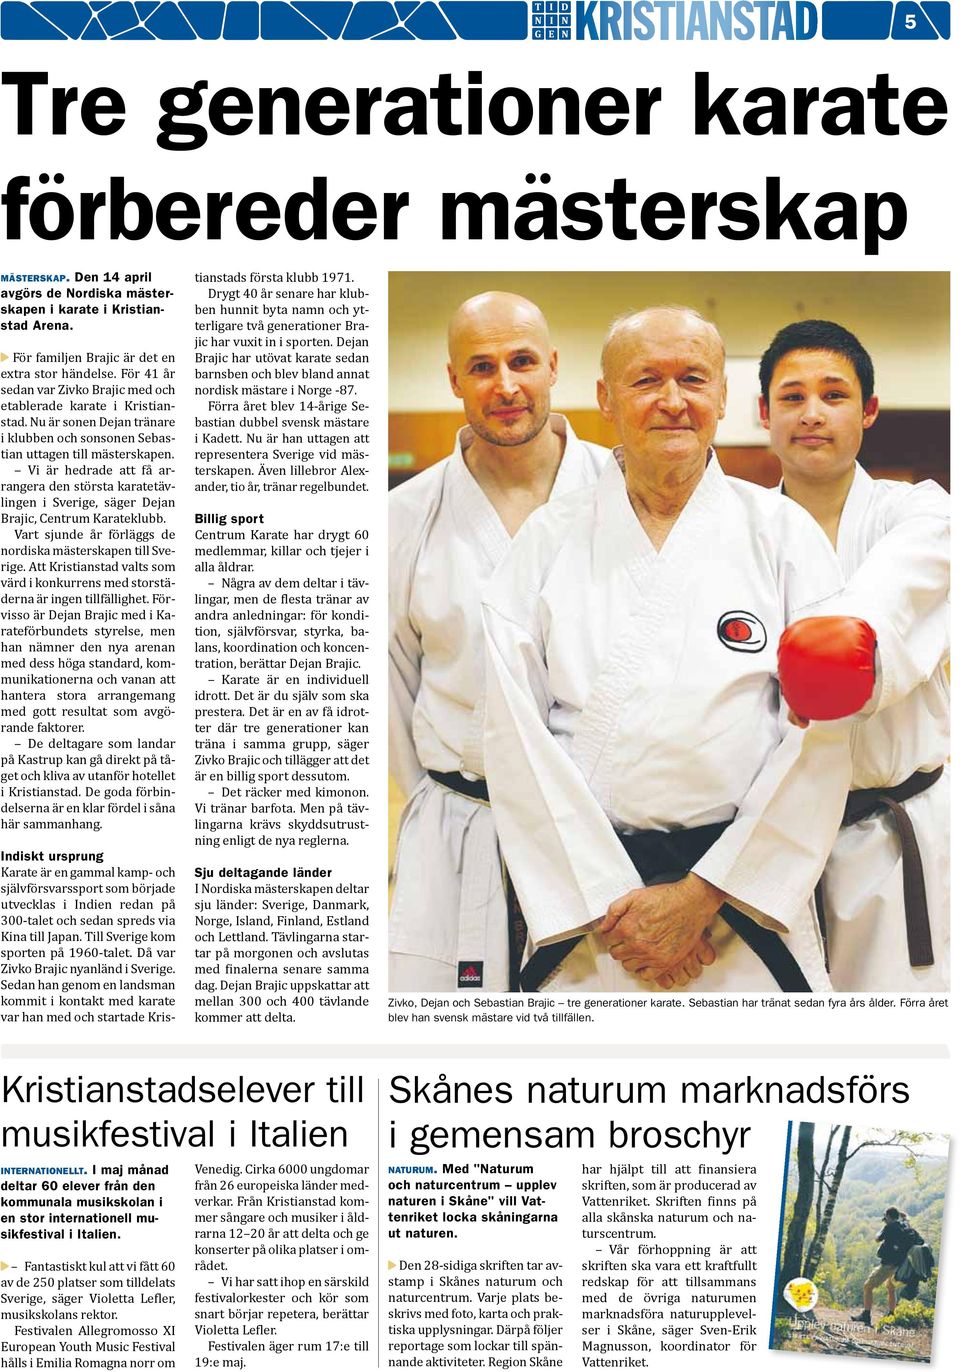 Vi är hedrade att få arrangera den största karatetävlingen i Sverige, säger Dejan Brajic, Centrum Karateklubb. Vart sjunde år förläggs de nordiska mästerskapen till Sverige.